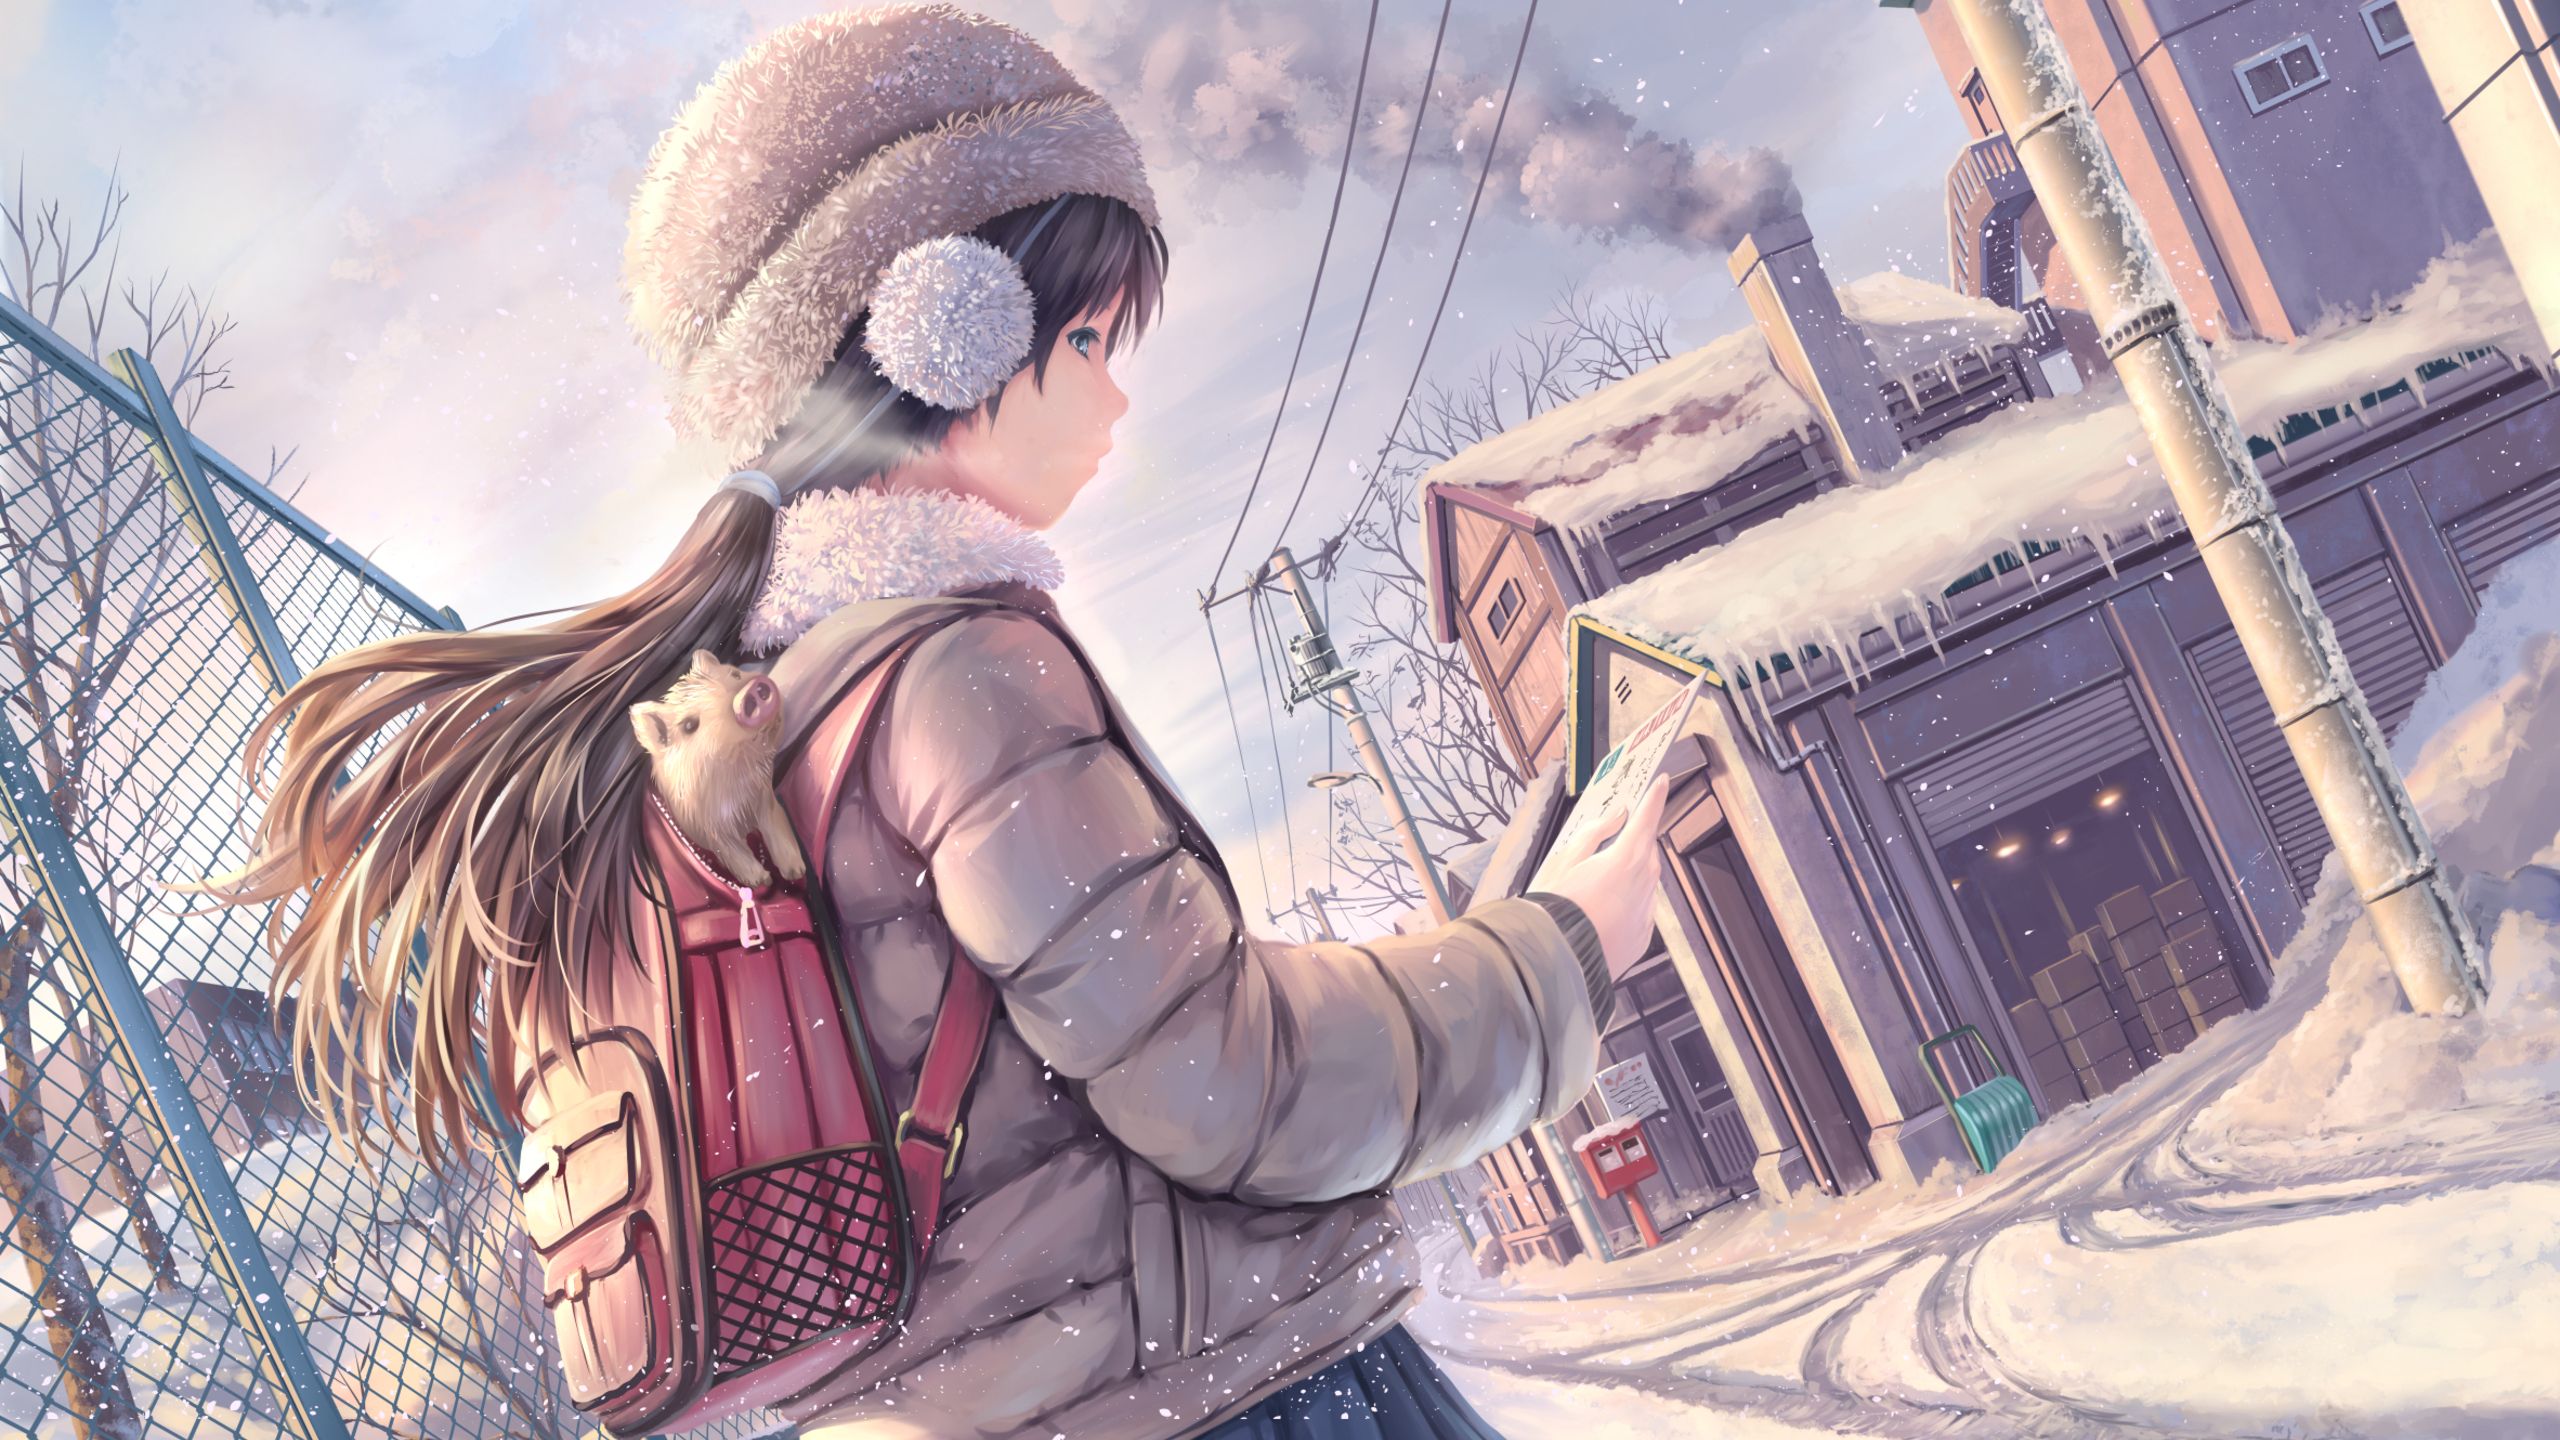 Brunette Anime Girl Snow Covered 1440P Resolution HD 4k